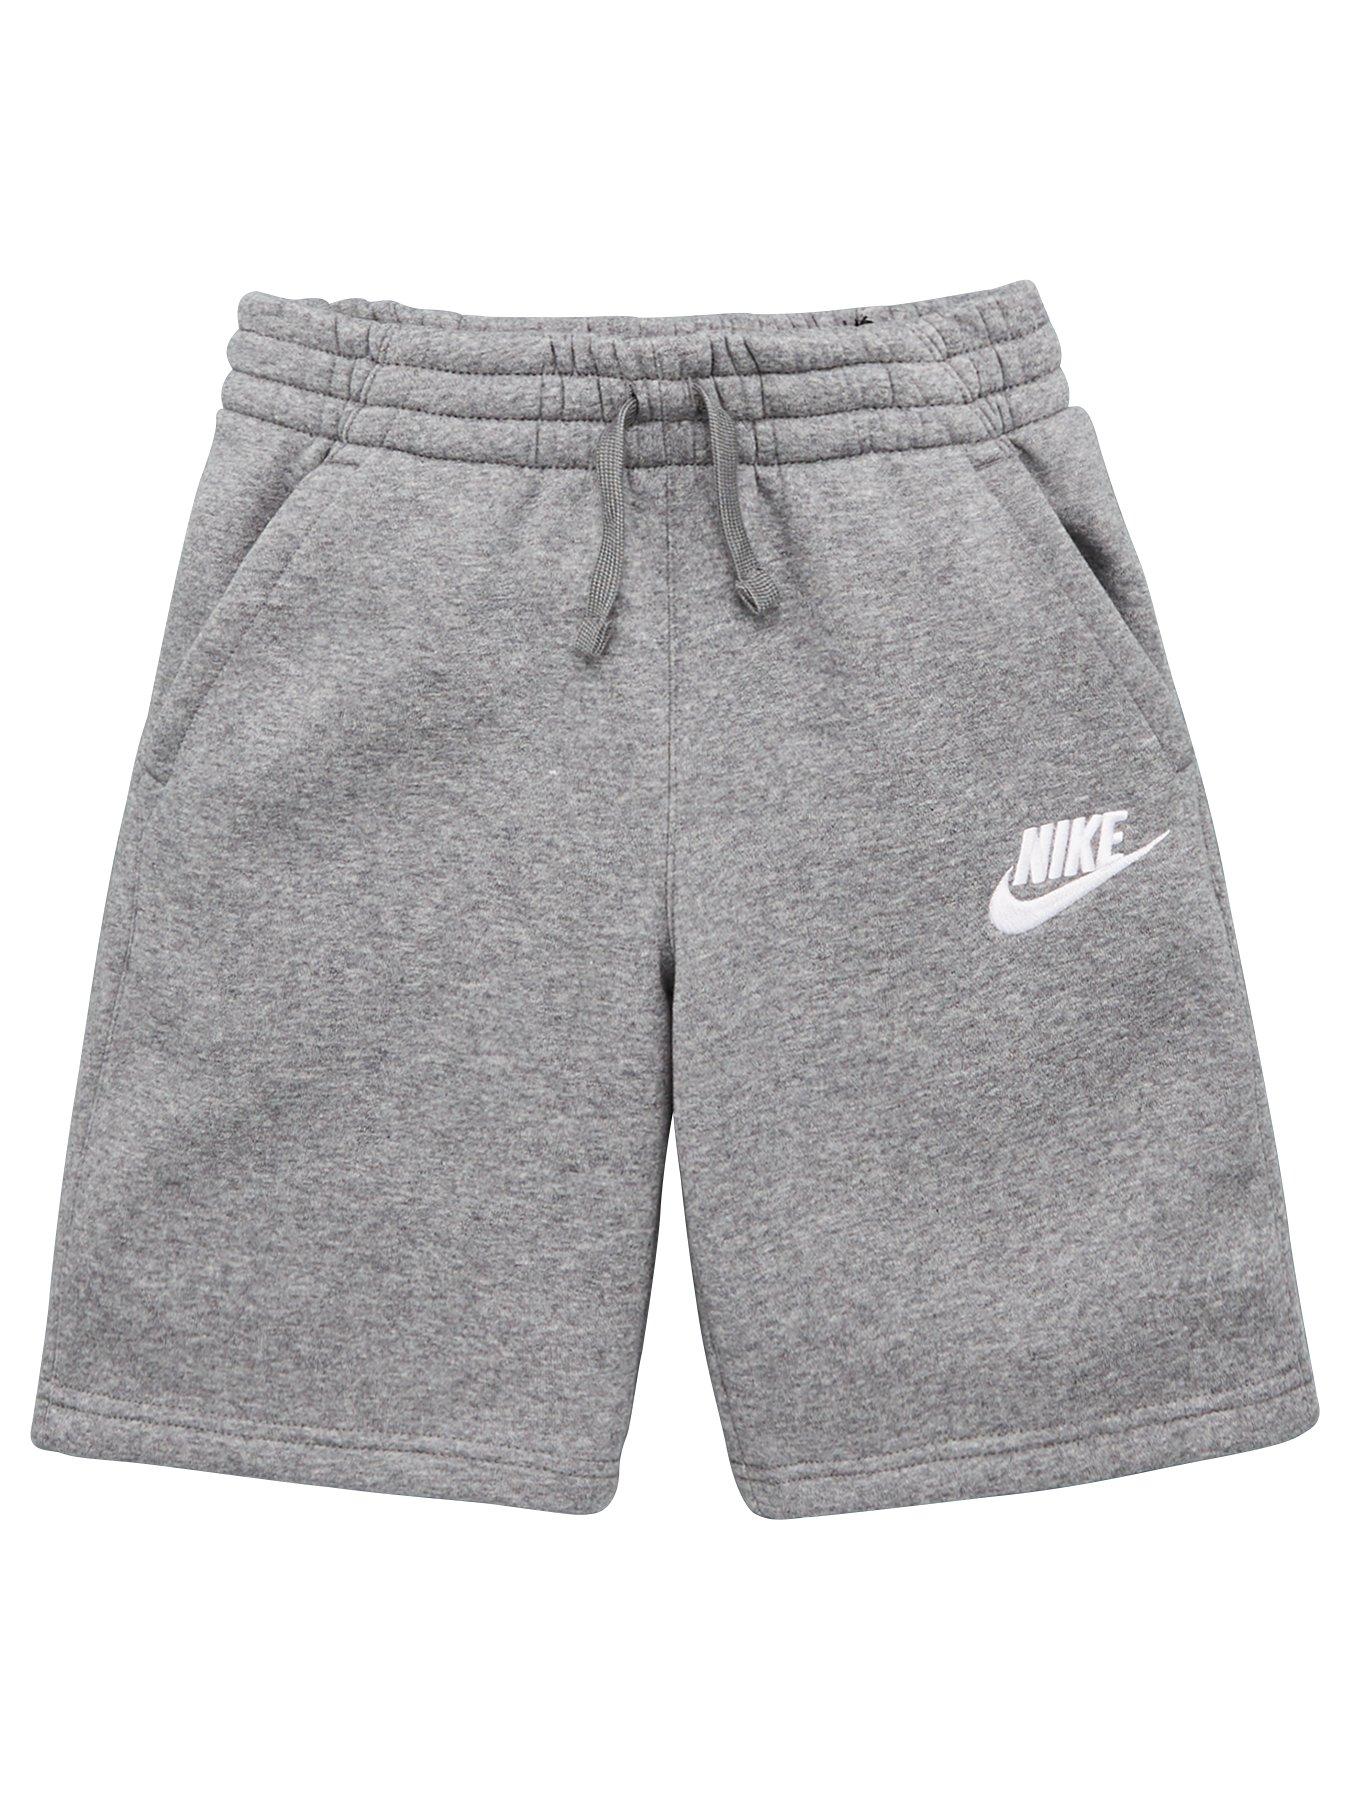 nike boy shorts grey